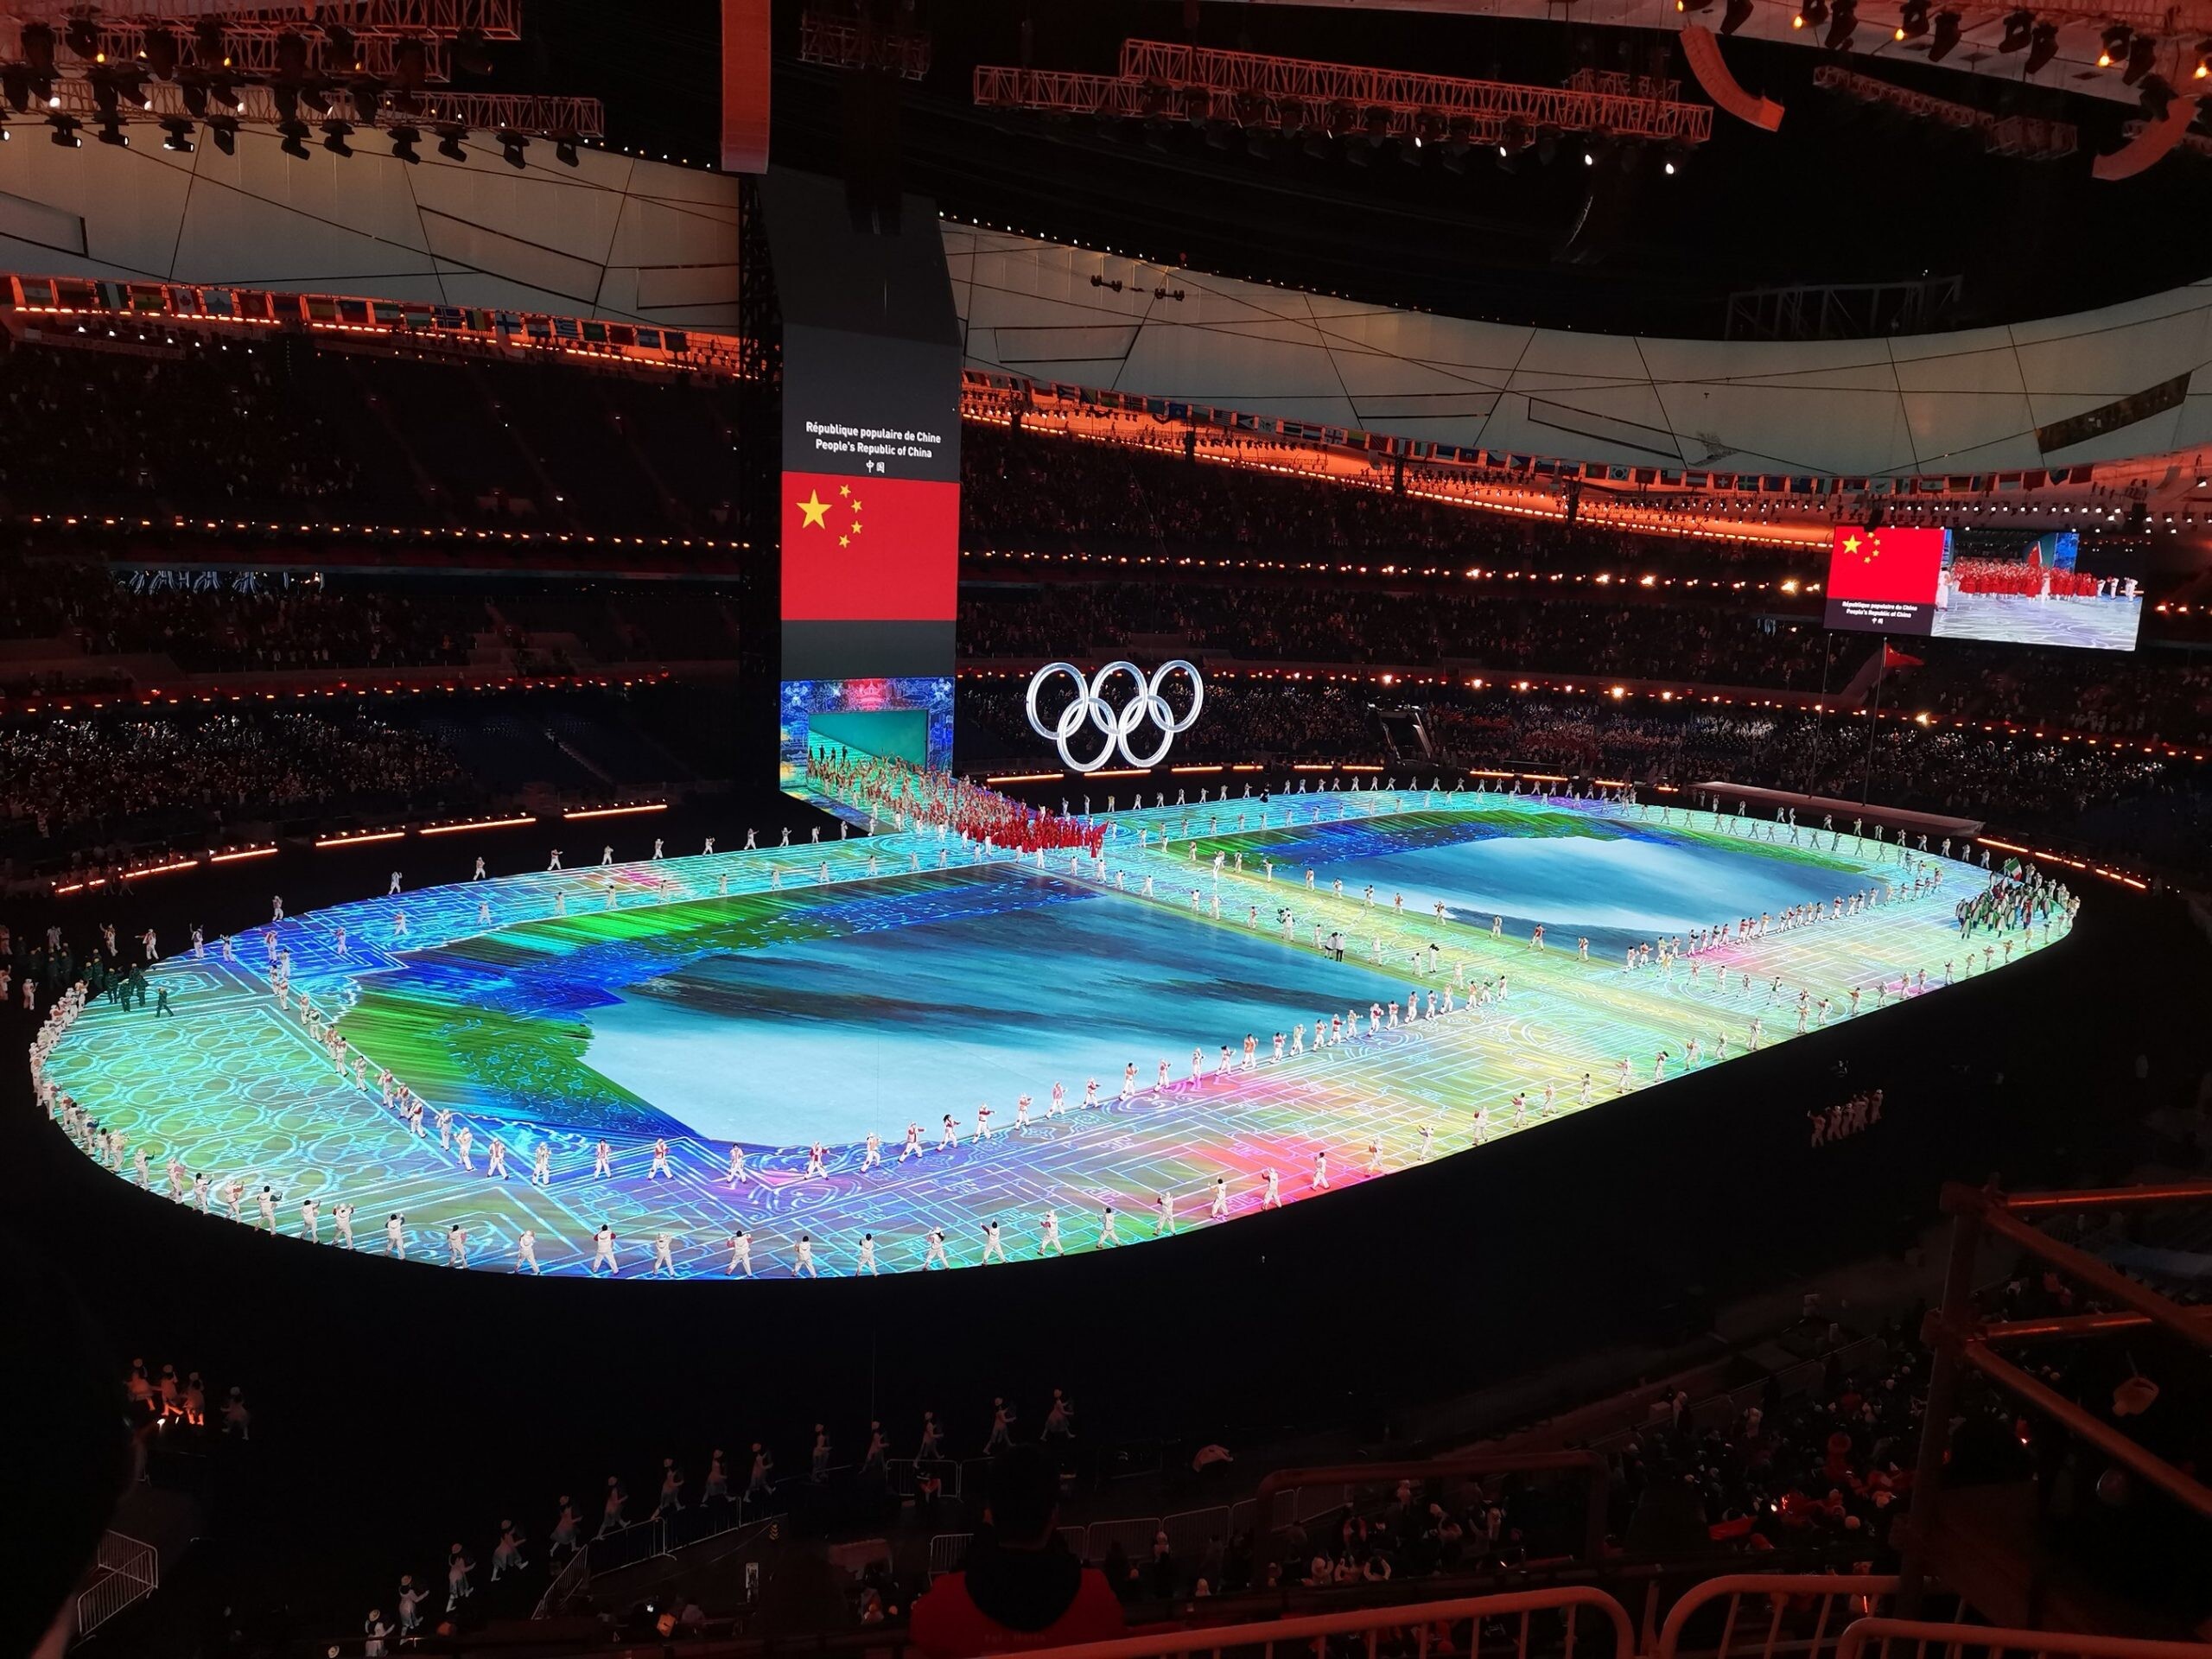 ยูนิลูมิน สนับสนุนพิธีเปิดการแข่งขันกีฬาโอลิมปิกฤดูหนาวปักกิ่ง 2022